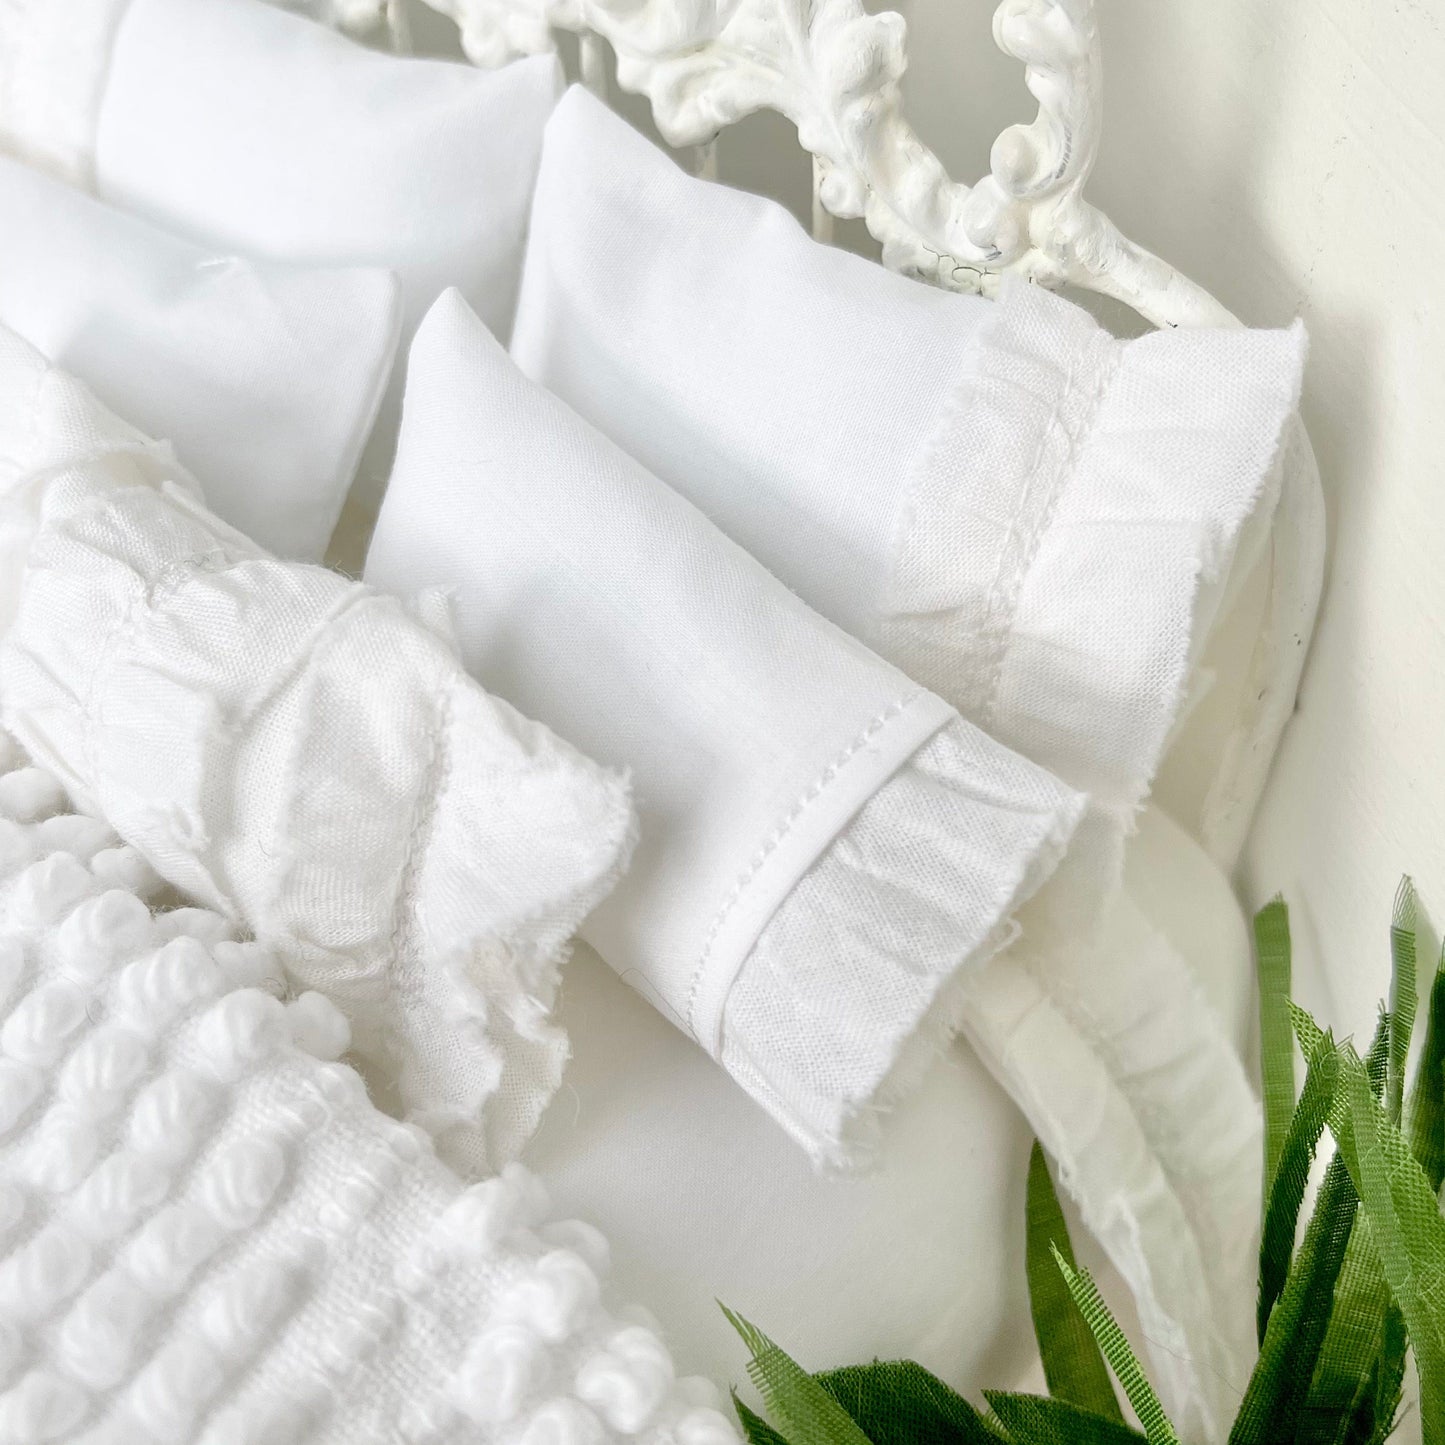 Chantallena White Bed Linens Boundless White | Eight Piece White Cotton with White Ruffles and Pintucks Bedding Set | Ciara